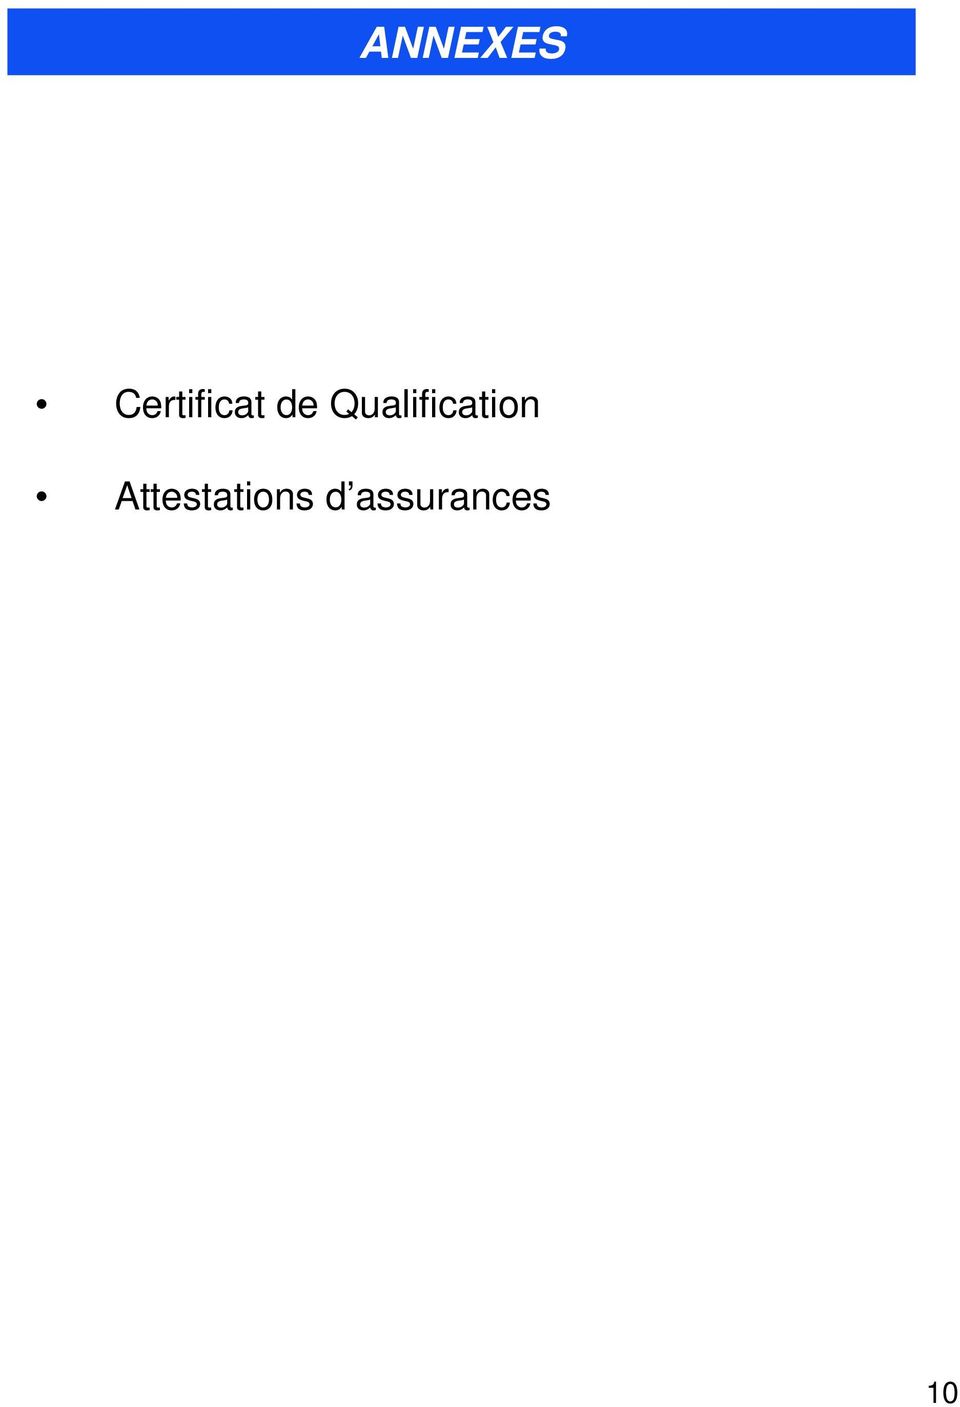 Qualification